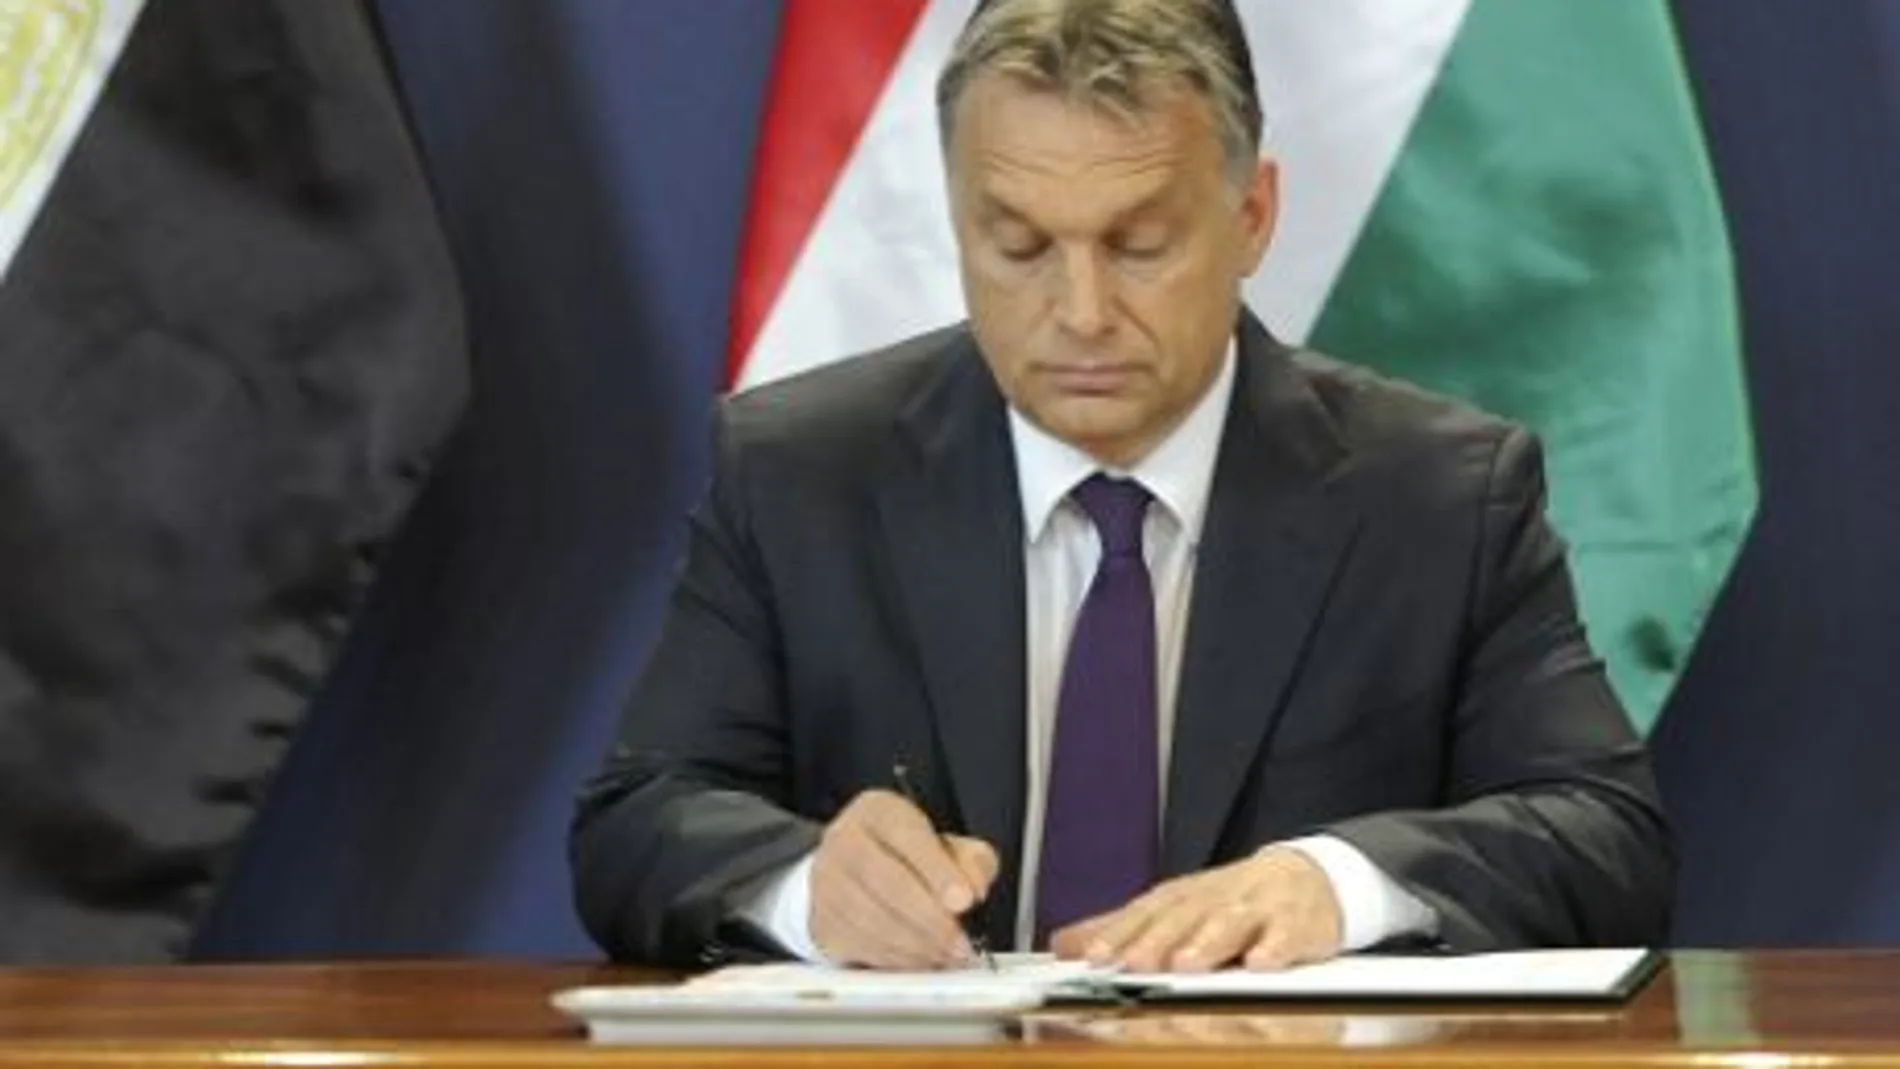 El presidente de Hungría Viktor Orban